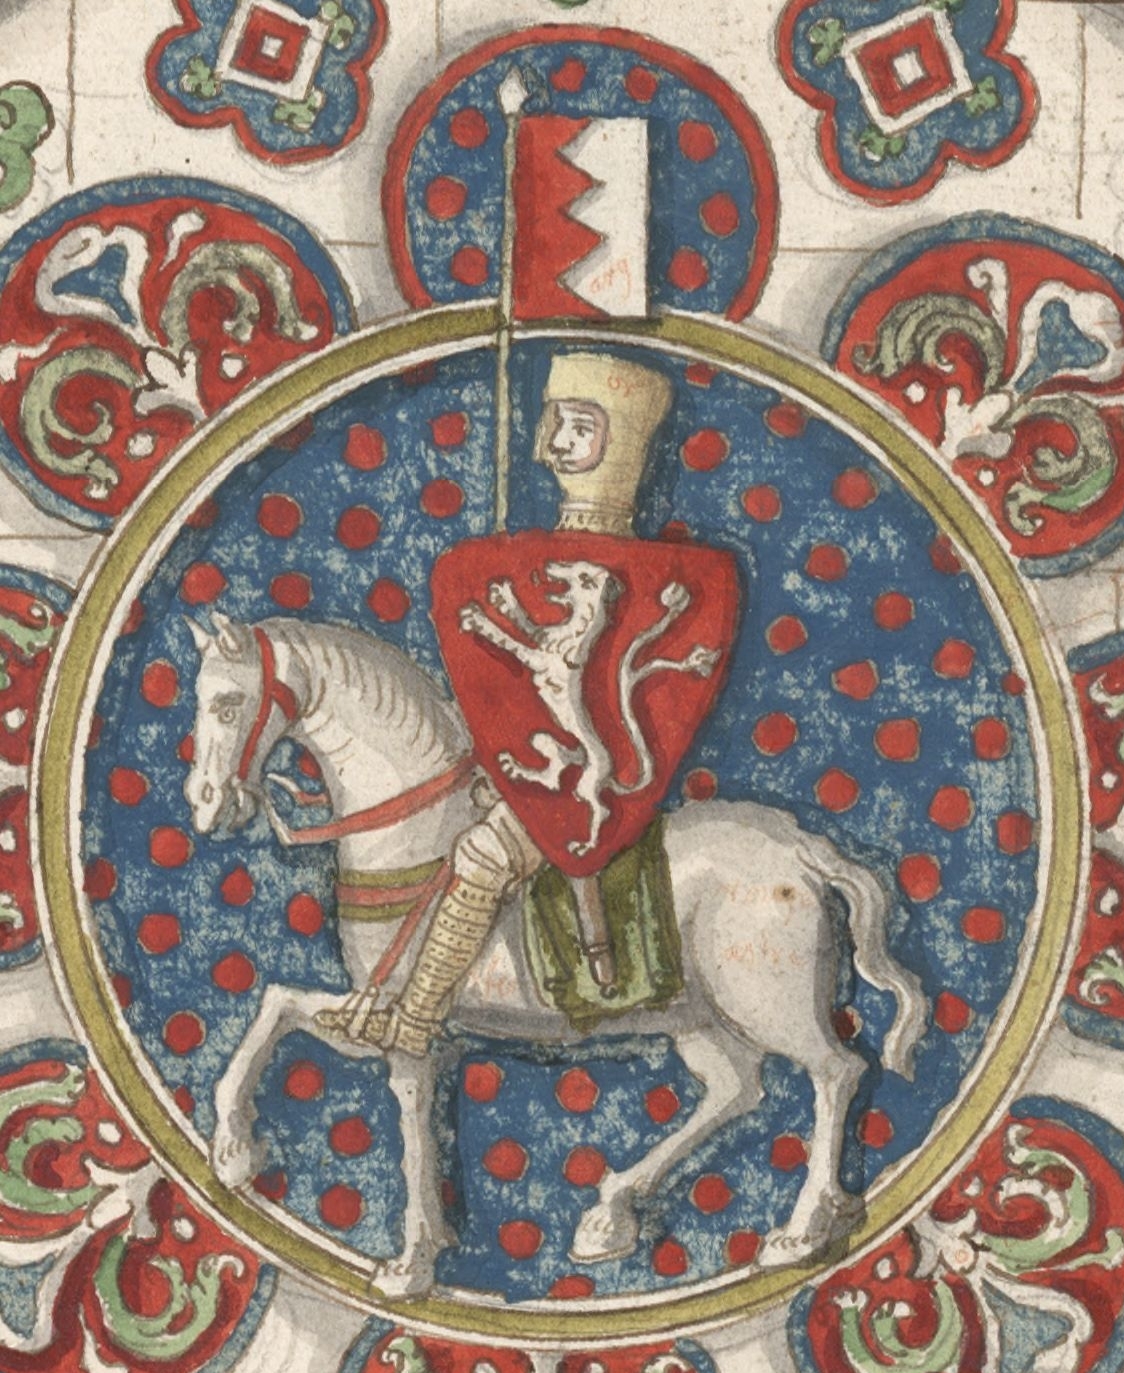 Simon de Montfort. Domaine Public via Wikimedia Commons